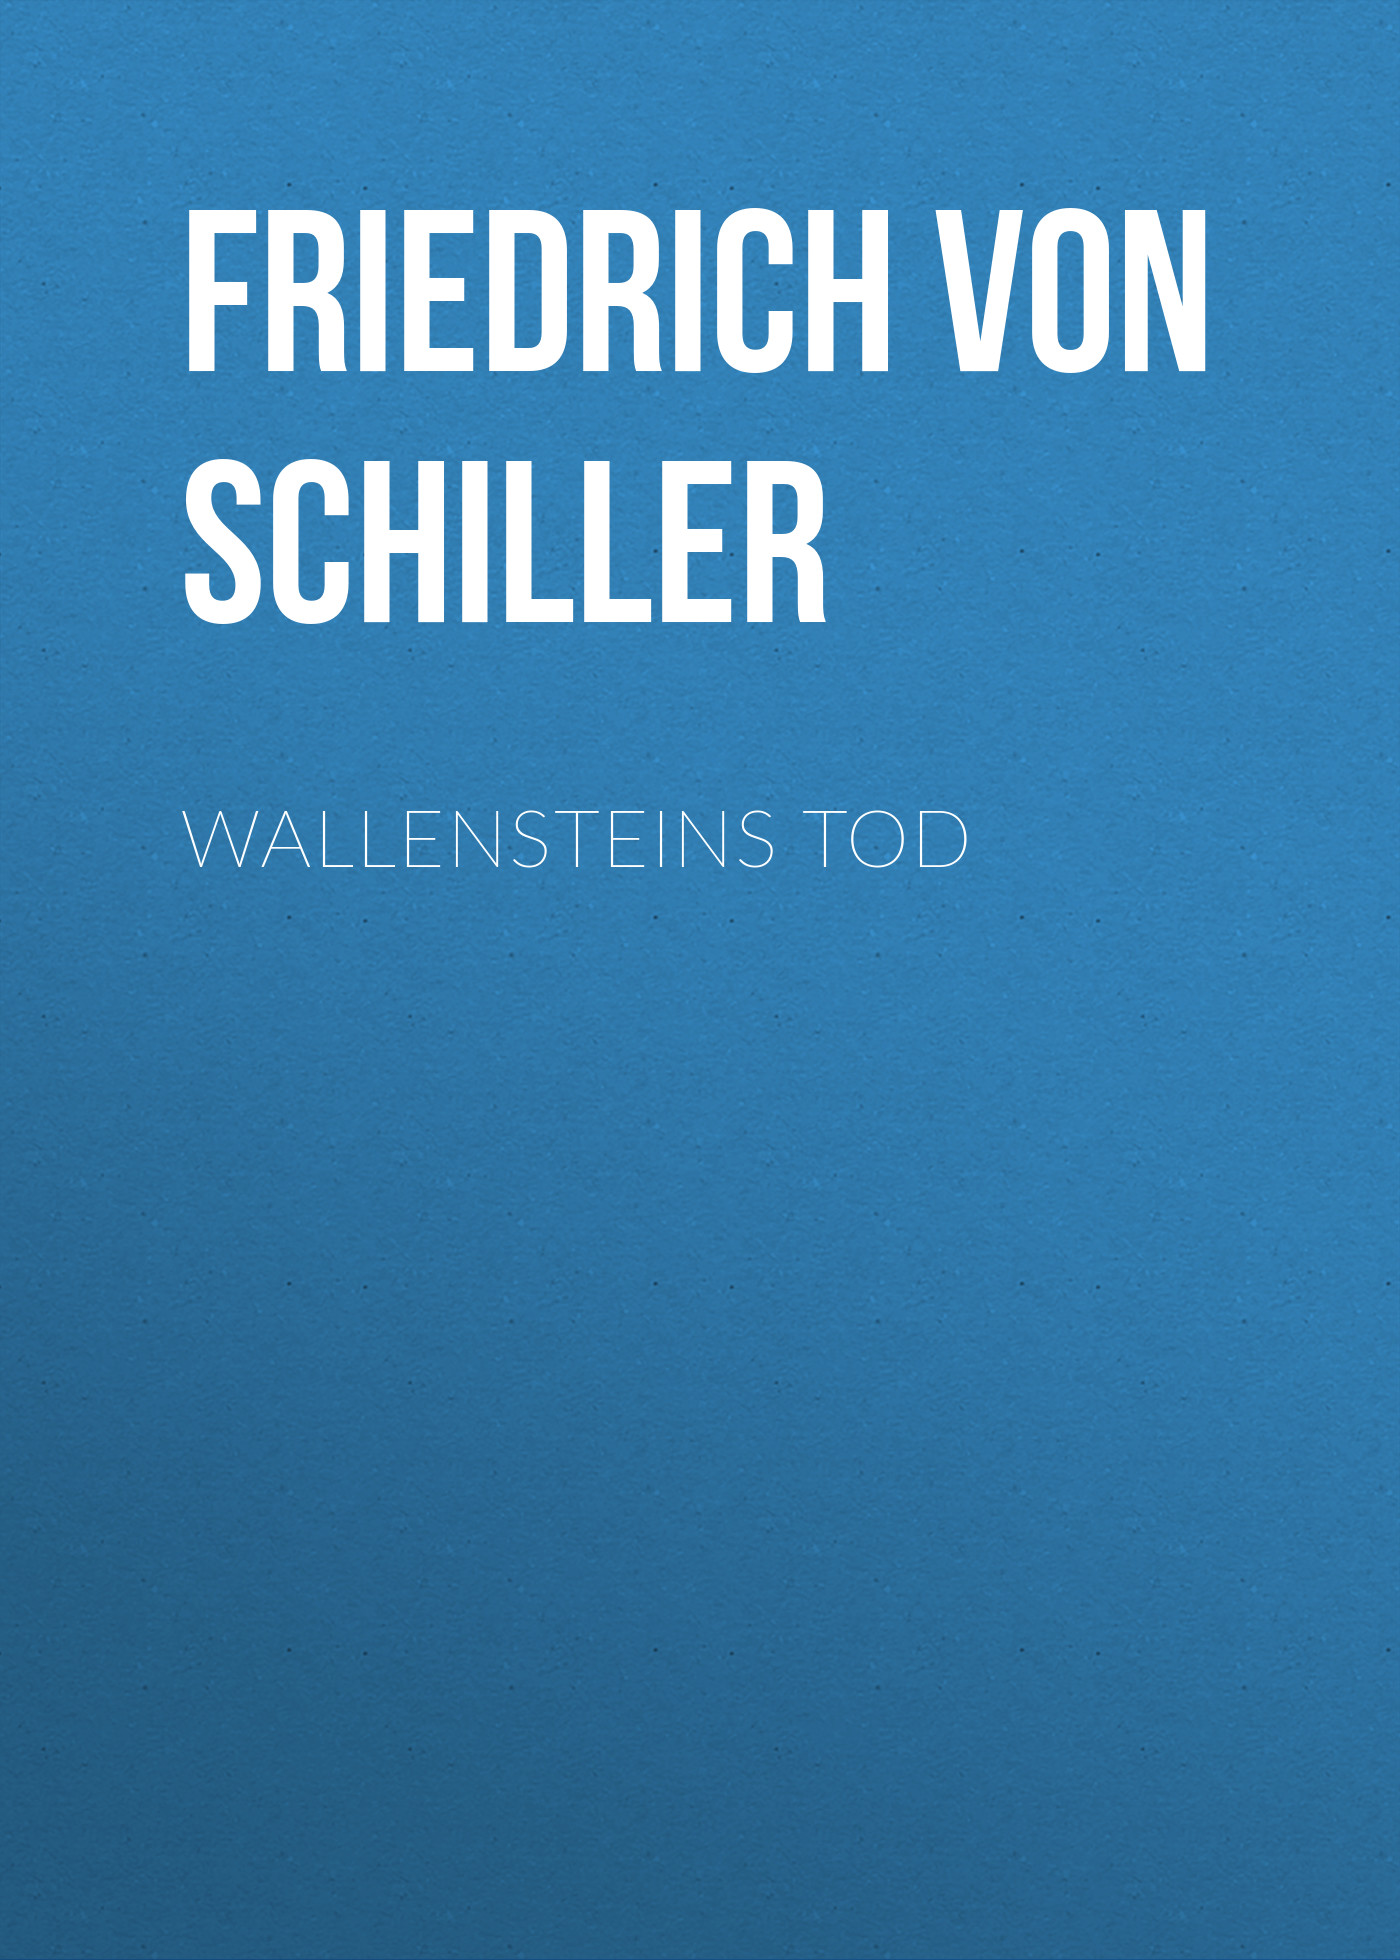 Книга Wallensteins Tod из серии , созданная Friedrich Schiller, может относится к жанру Литература 18 века, Драматургия, Зарубежная старинная литература, Зарубежная классика, Зарубежная драматургия. Стоимость электронной книги Wallensteins Tod с идентификатором 25449868 составляет 0 руб.